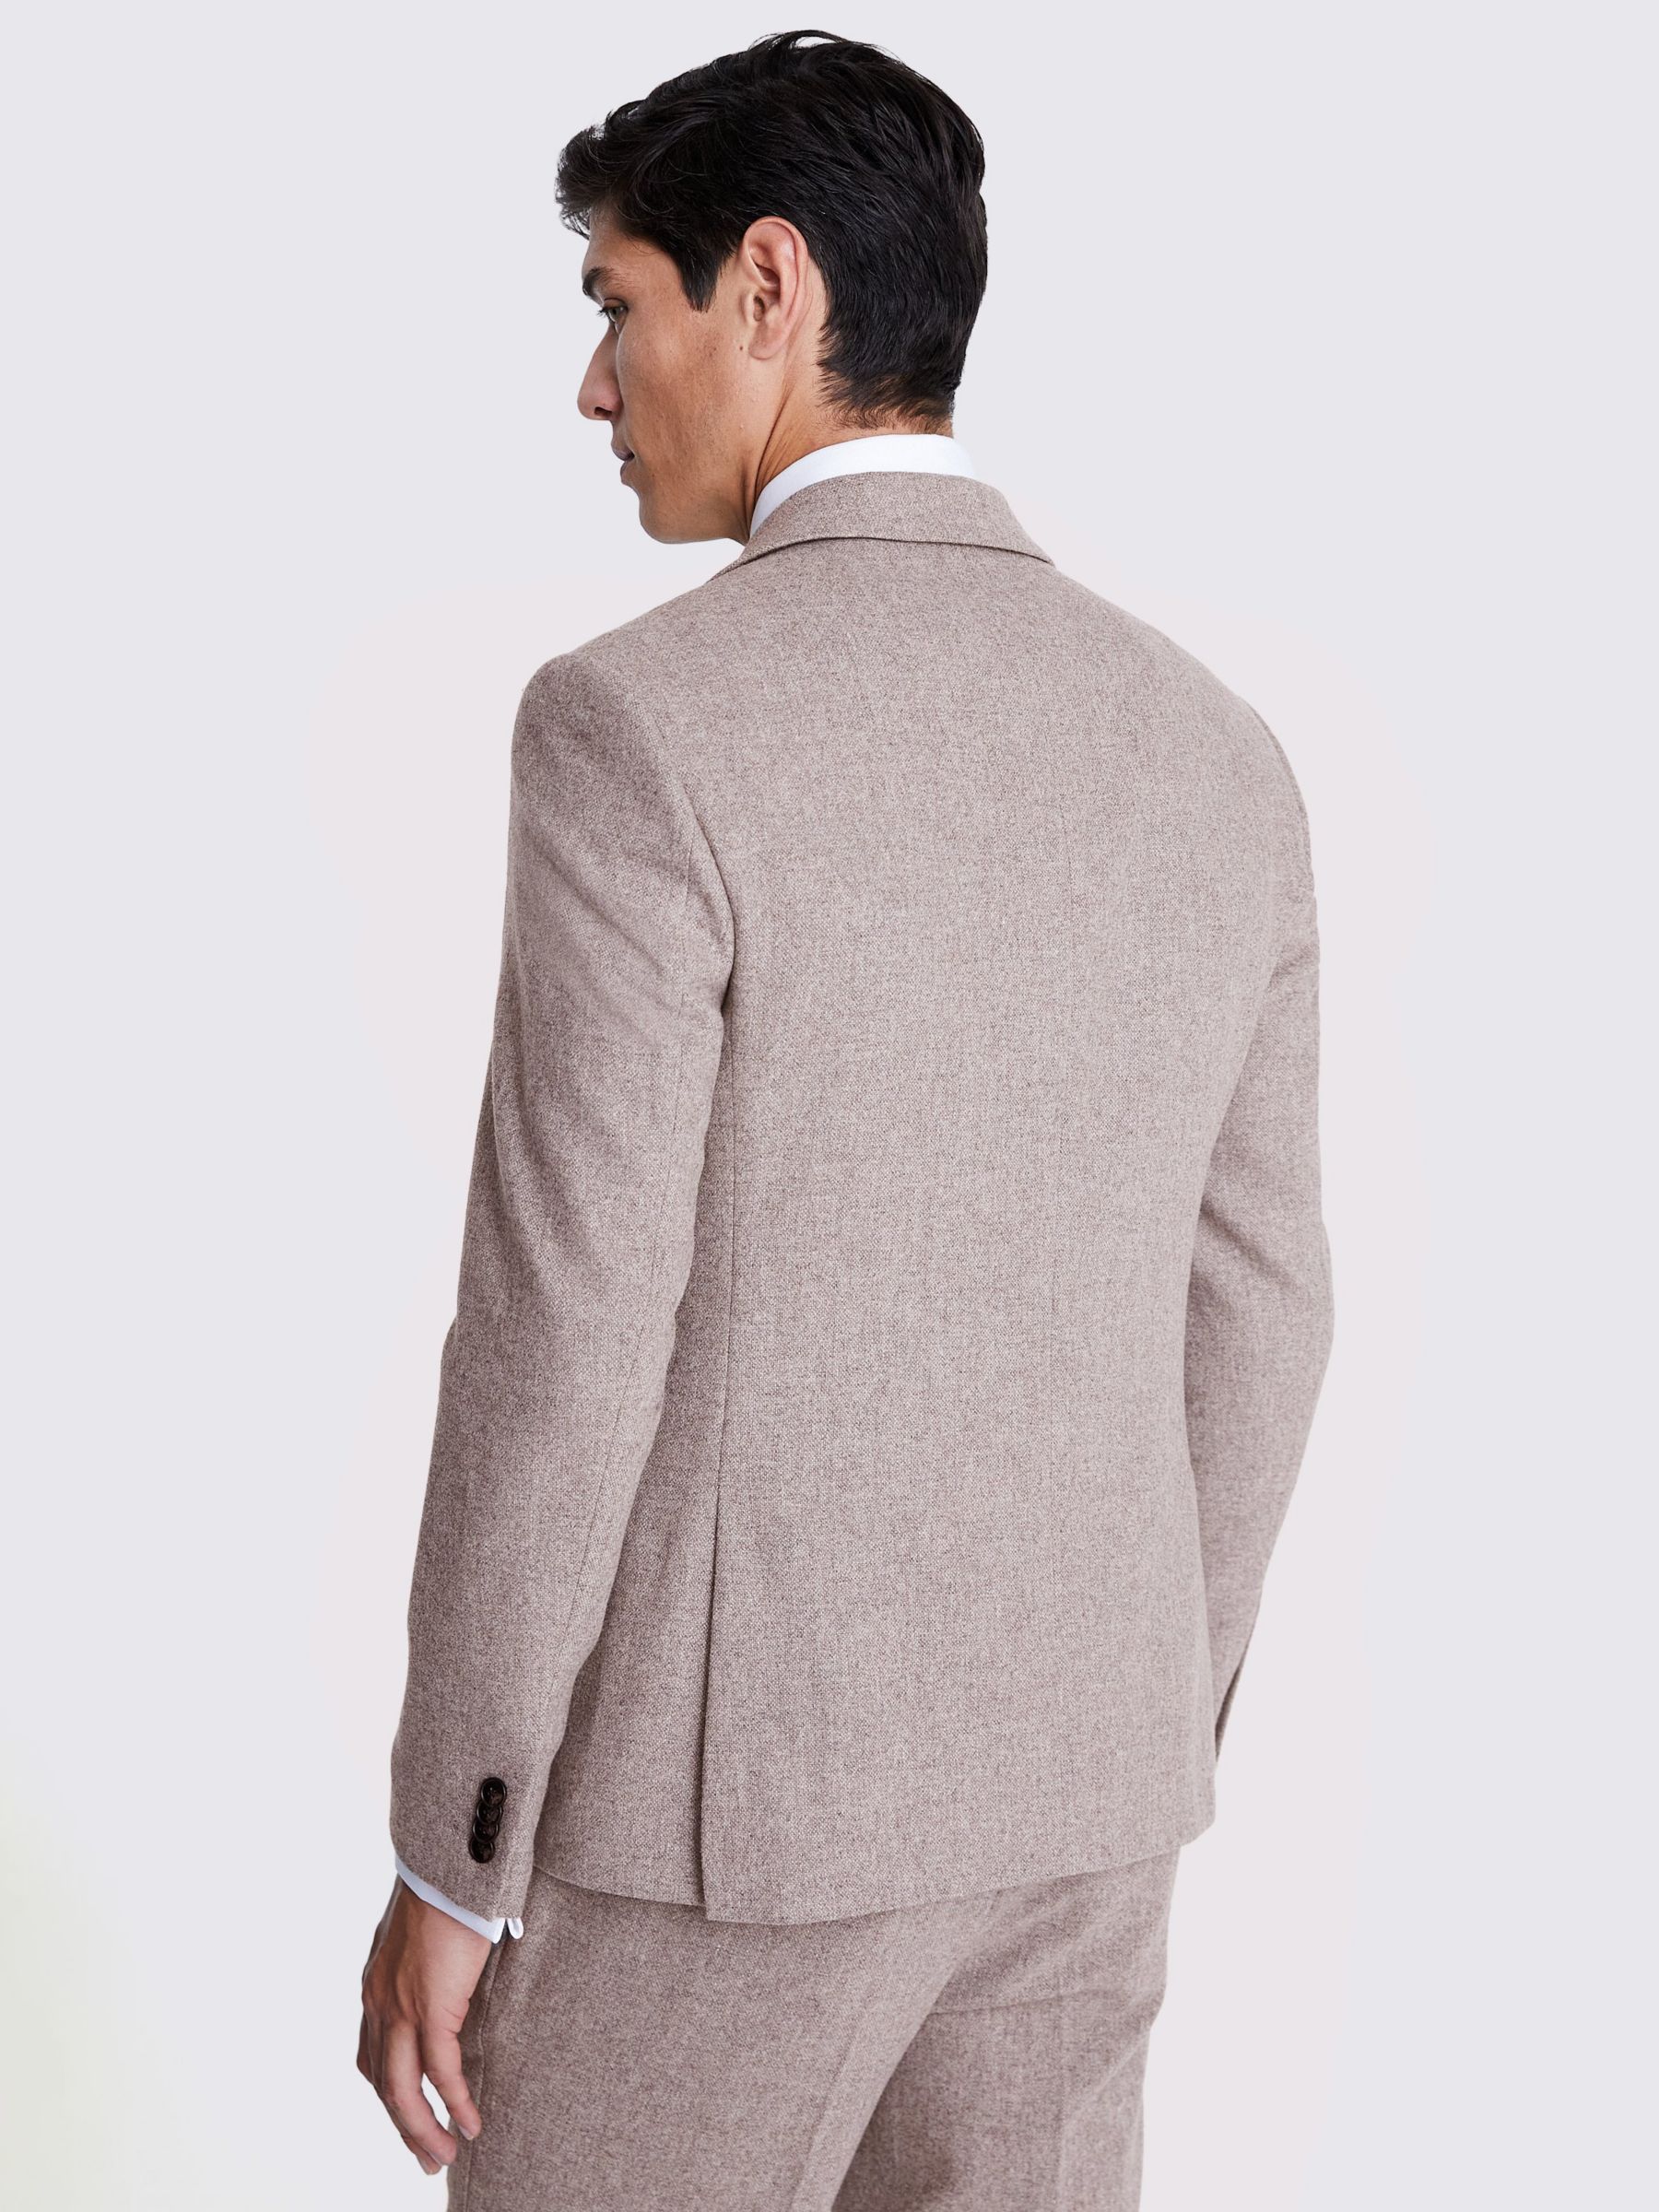 Moss Slim Fit Donegal Tweed Jacket, Beige at John Lewis & Partners